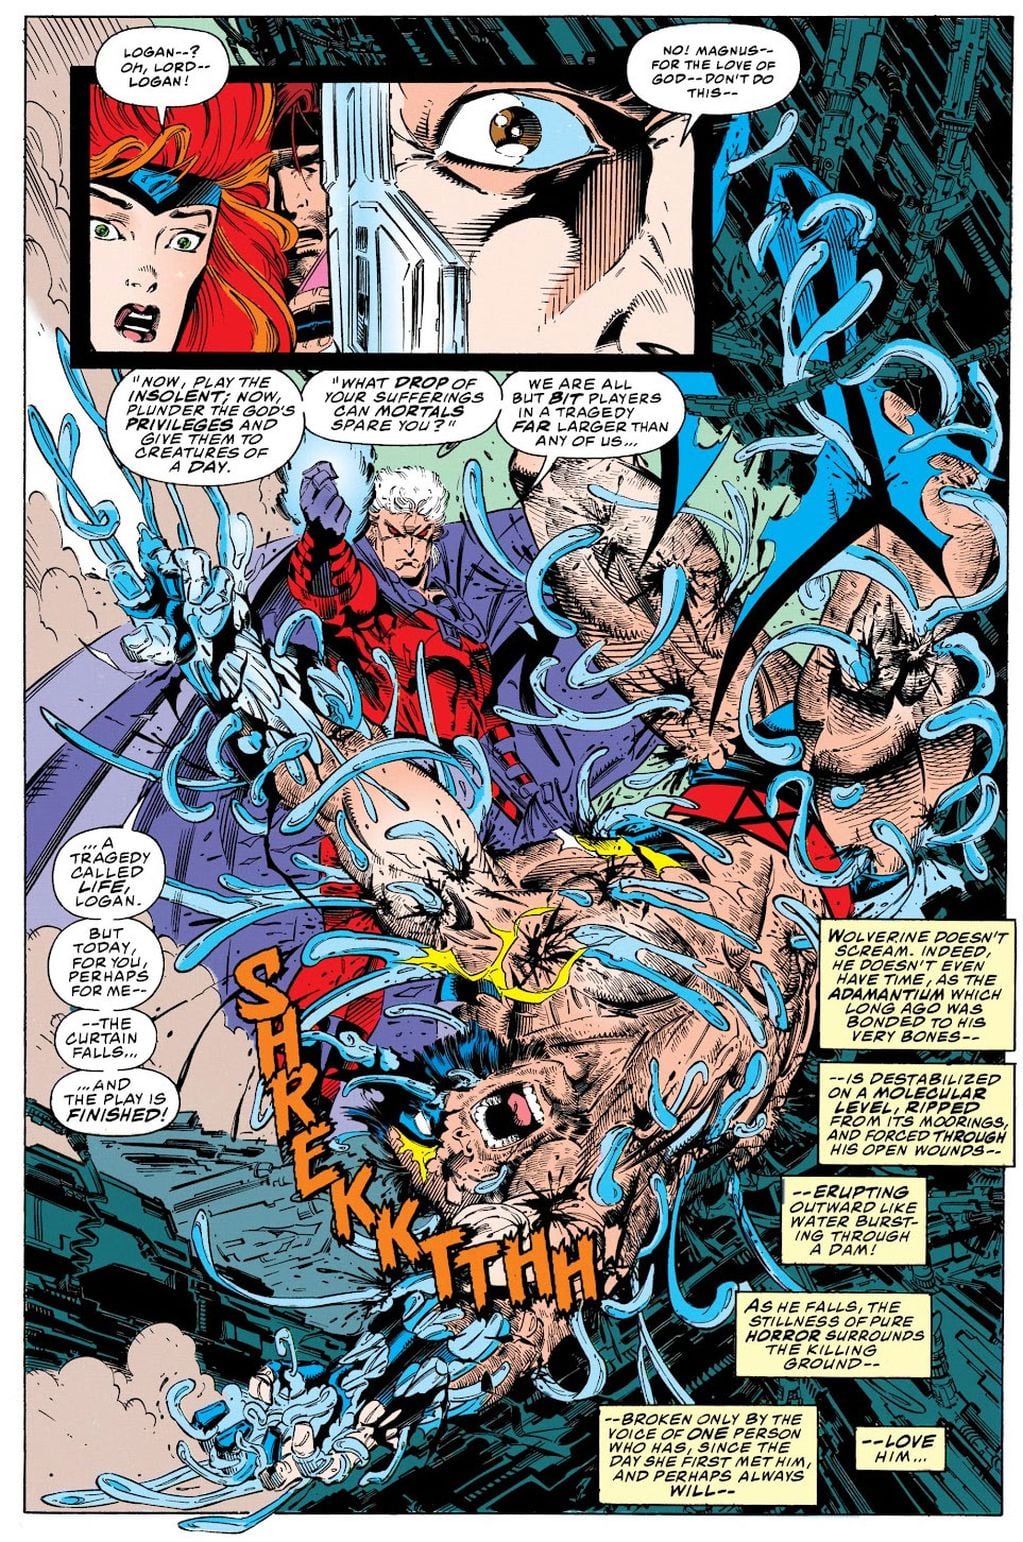 X-Men #25. Marvel Comics.